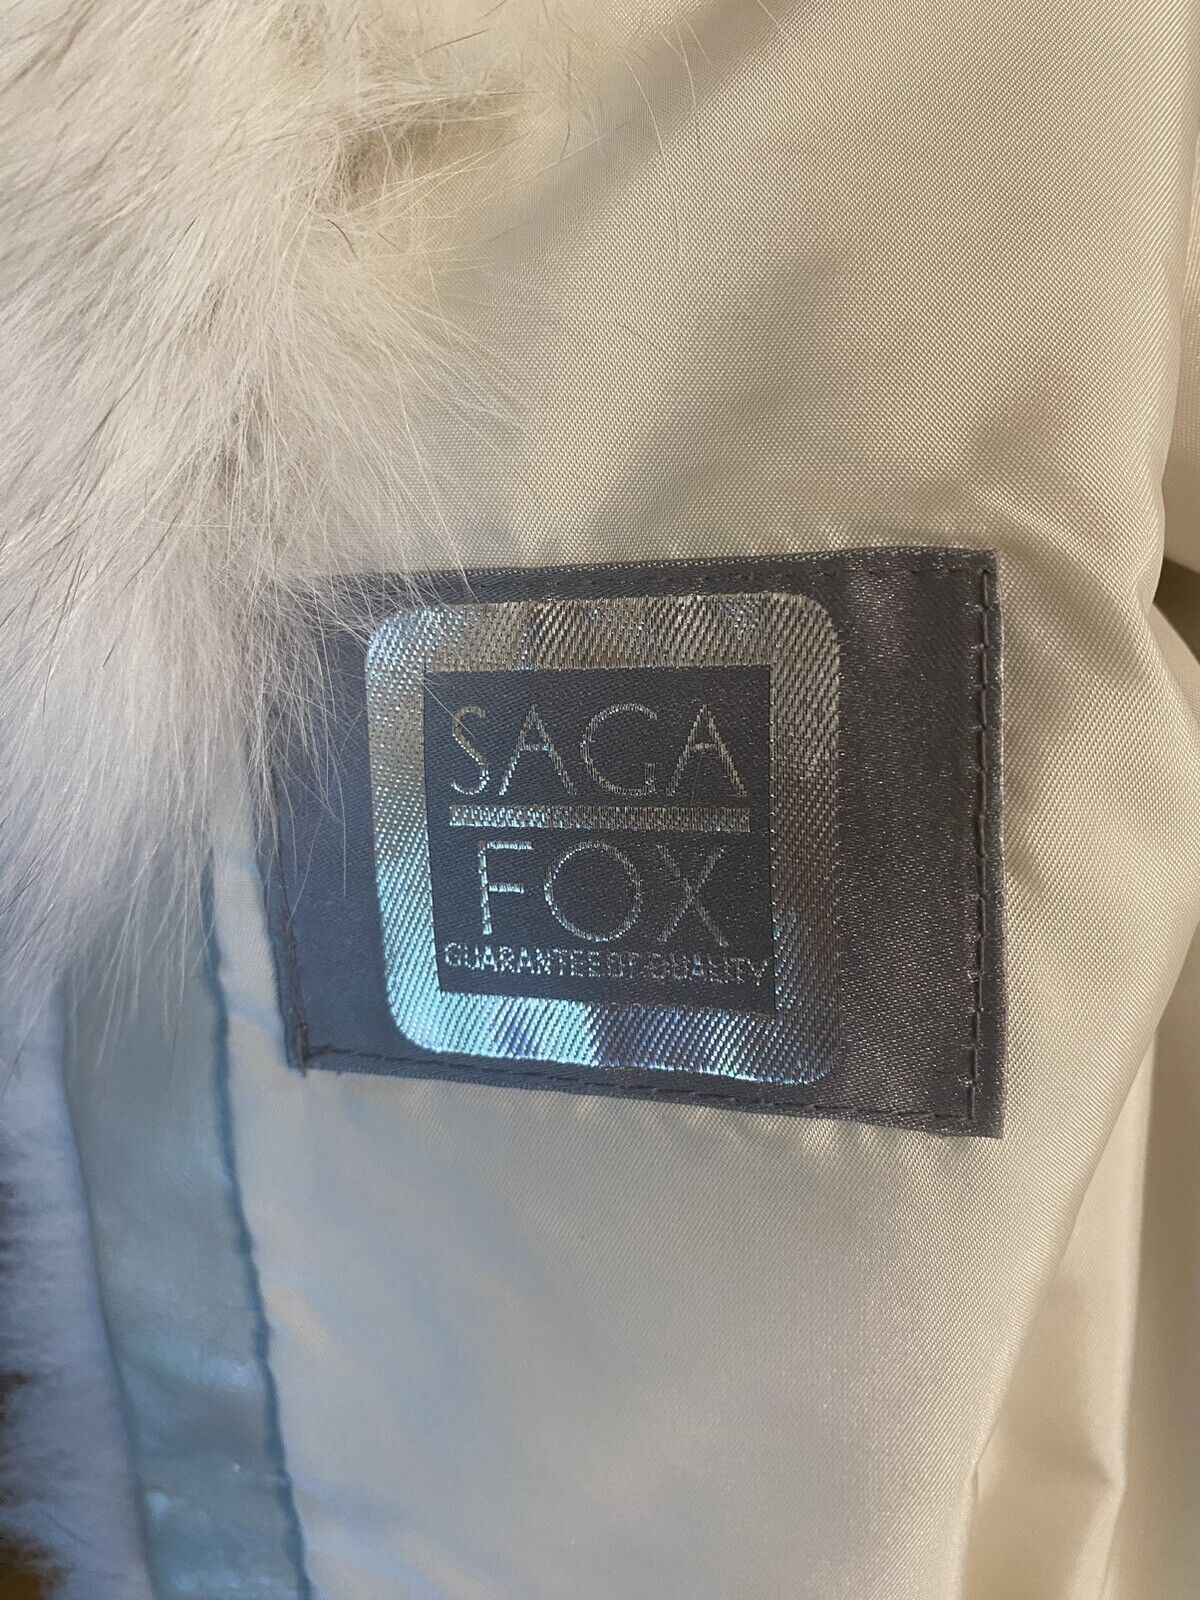 Fox Fur Luxury Jacket/coat By Saga Fox - image 4